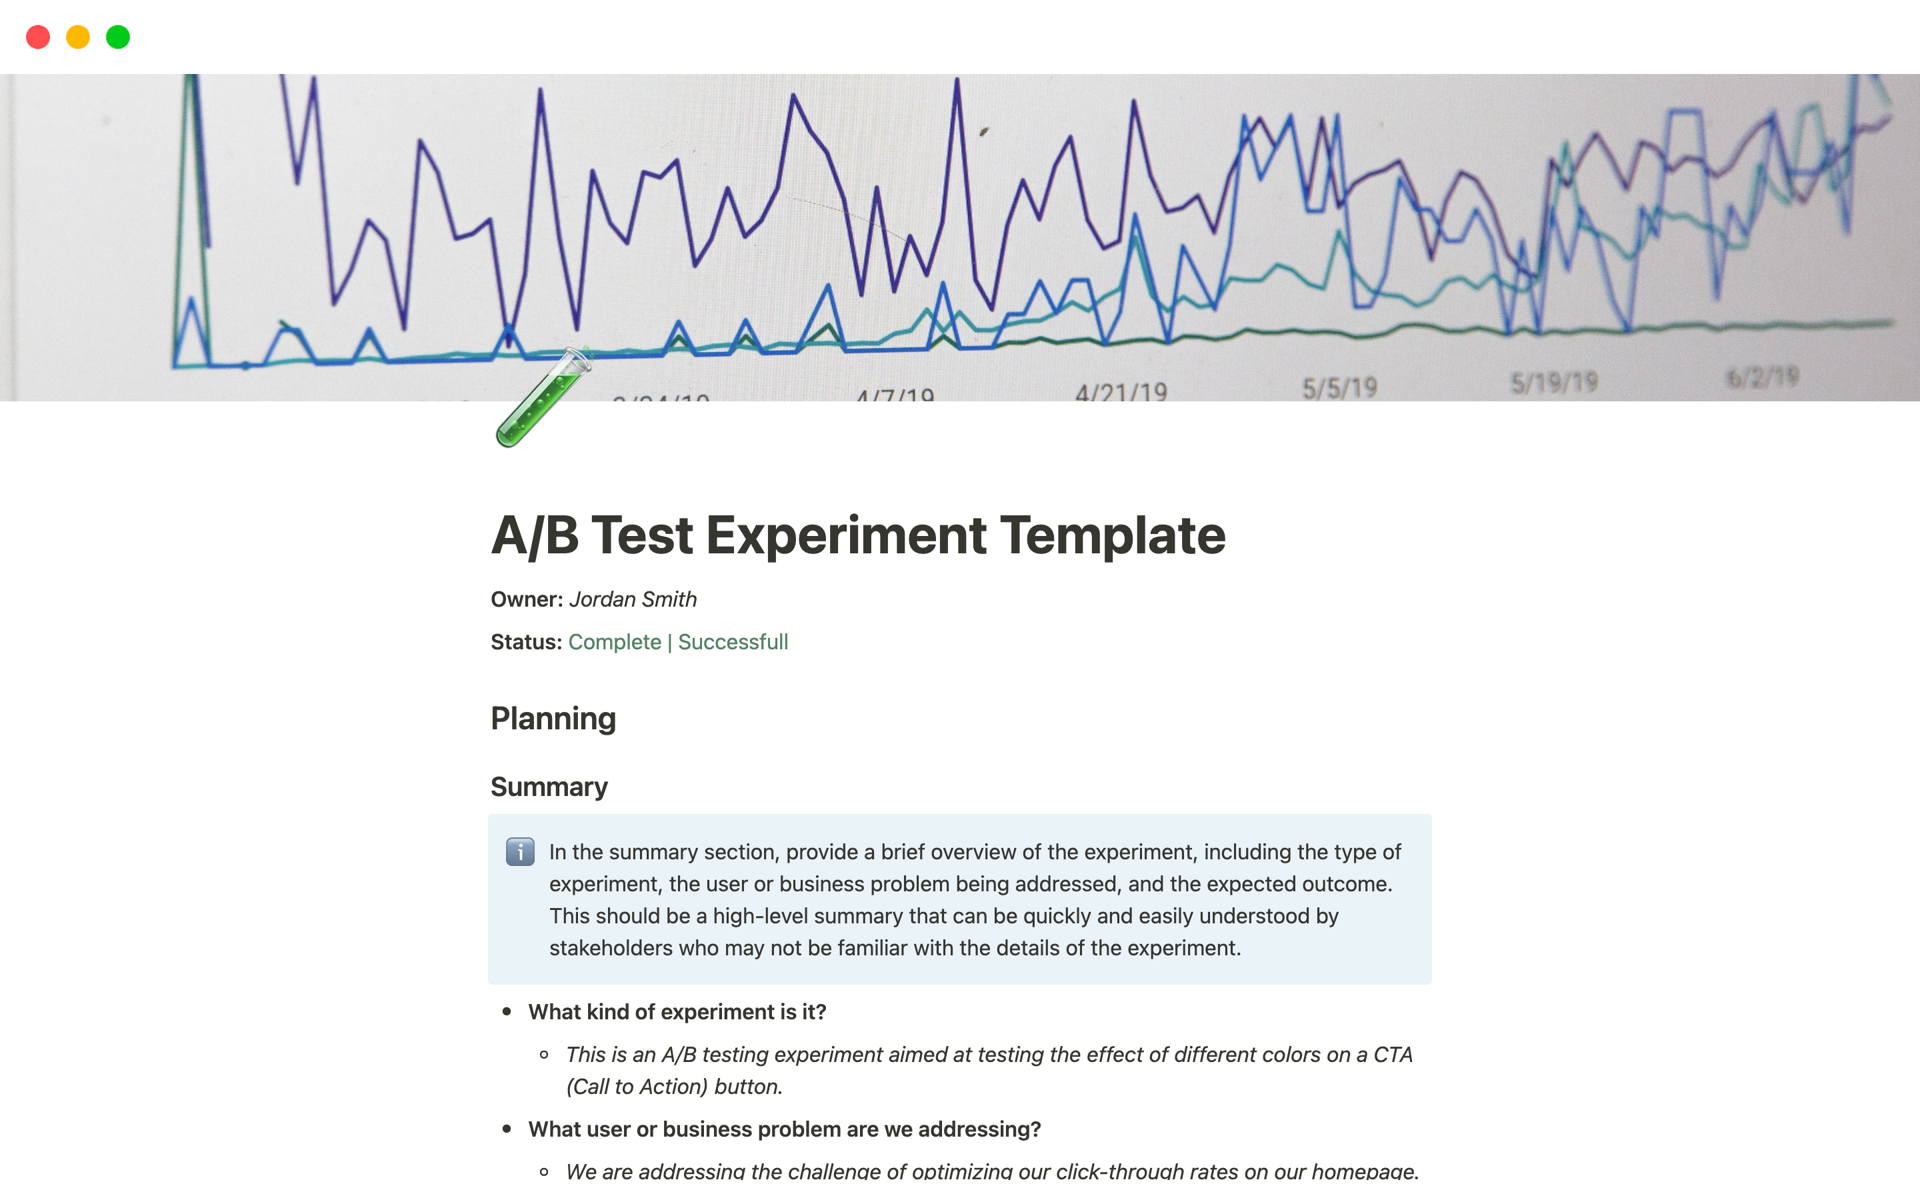 Vista previa de una plantilla para A/B Test Experiment Template